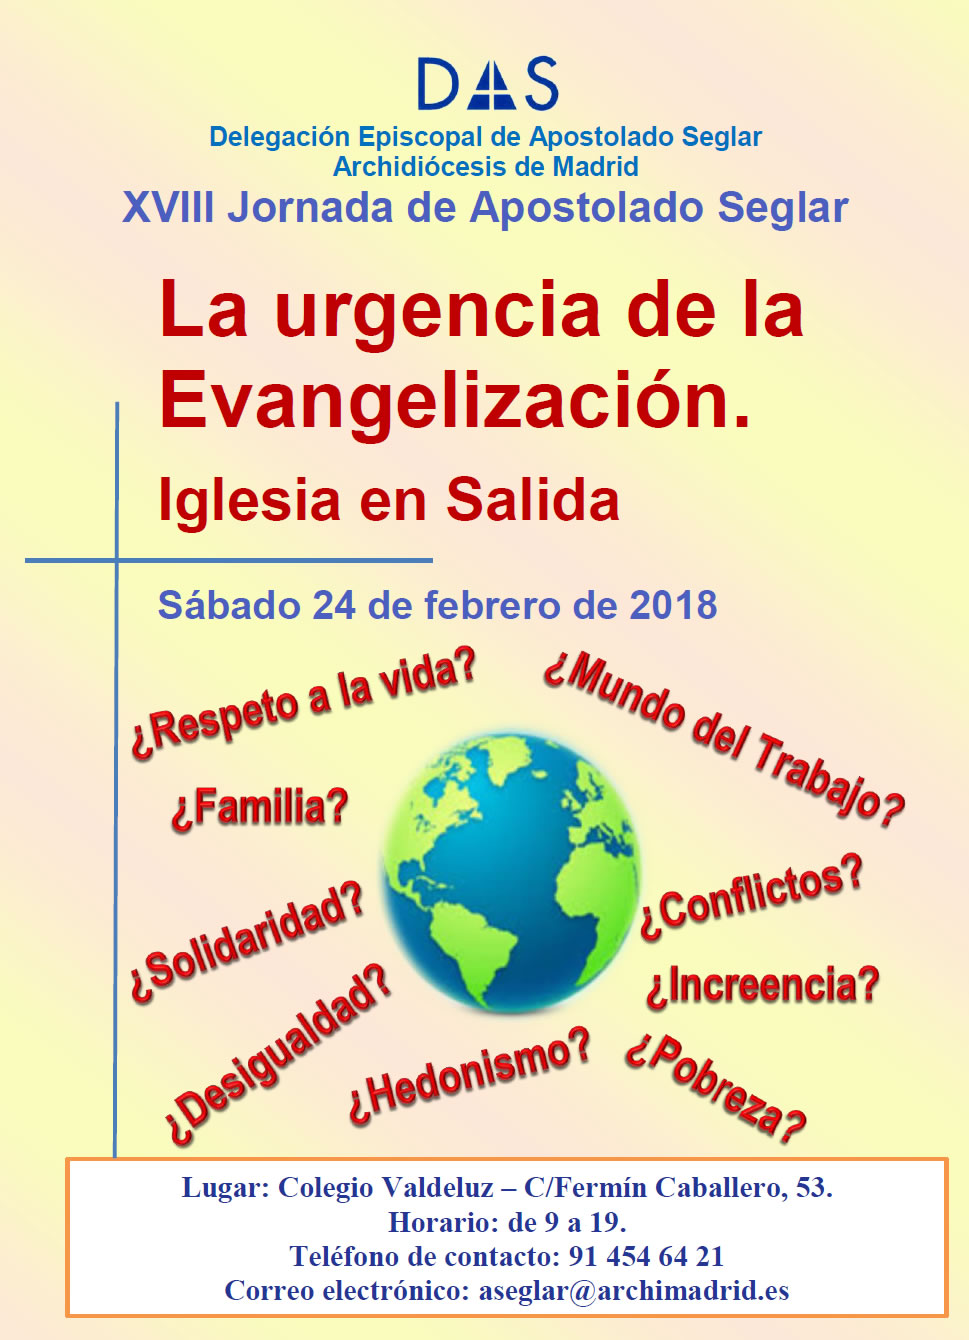 La urgencia de la Evangelización